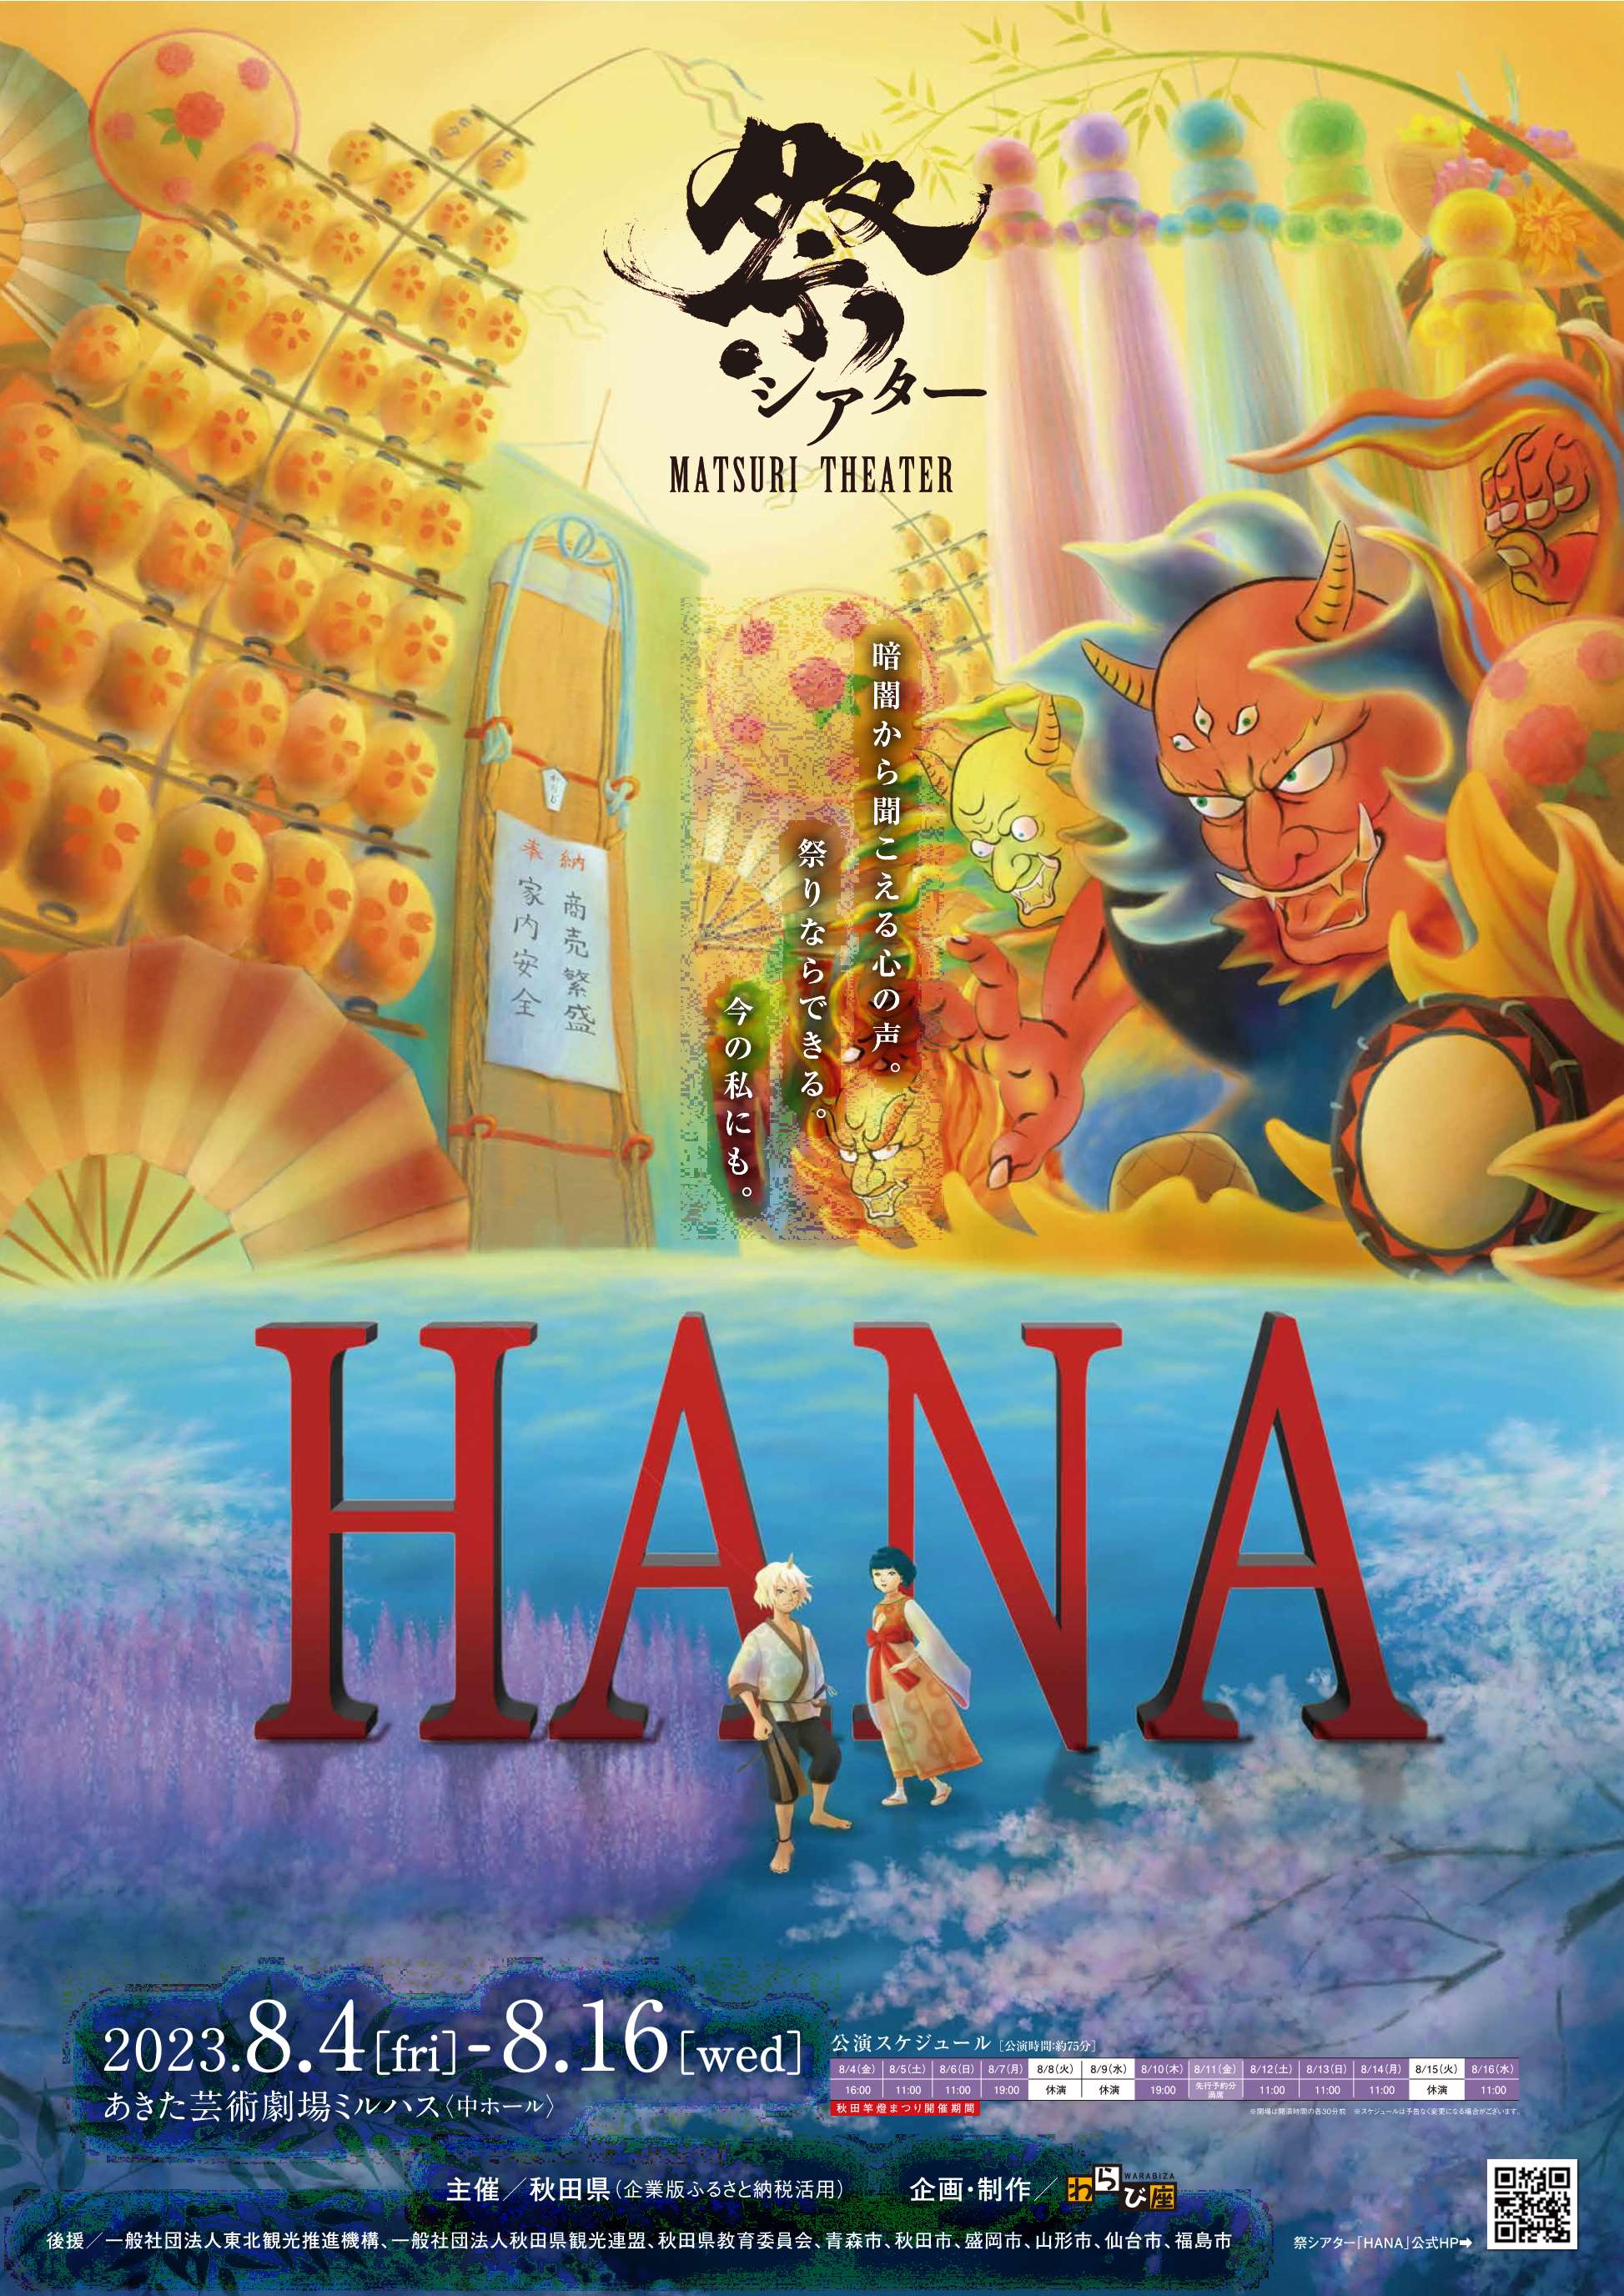 8/4-8/16　劇団わらび座によるノンバーバル（非言語型）ミュージカル「祭シアター『HANA』」について